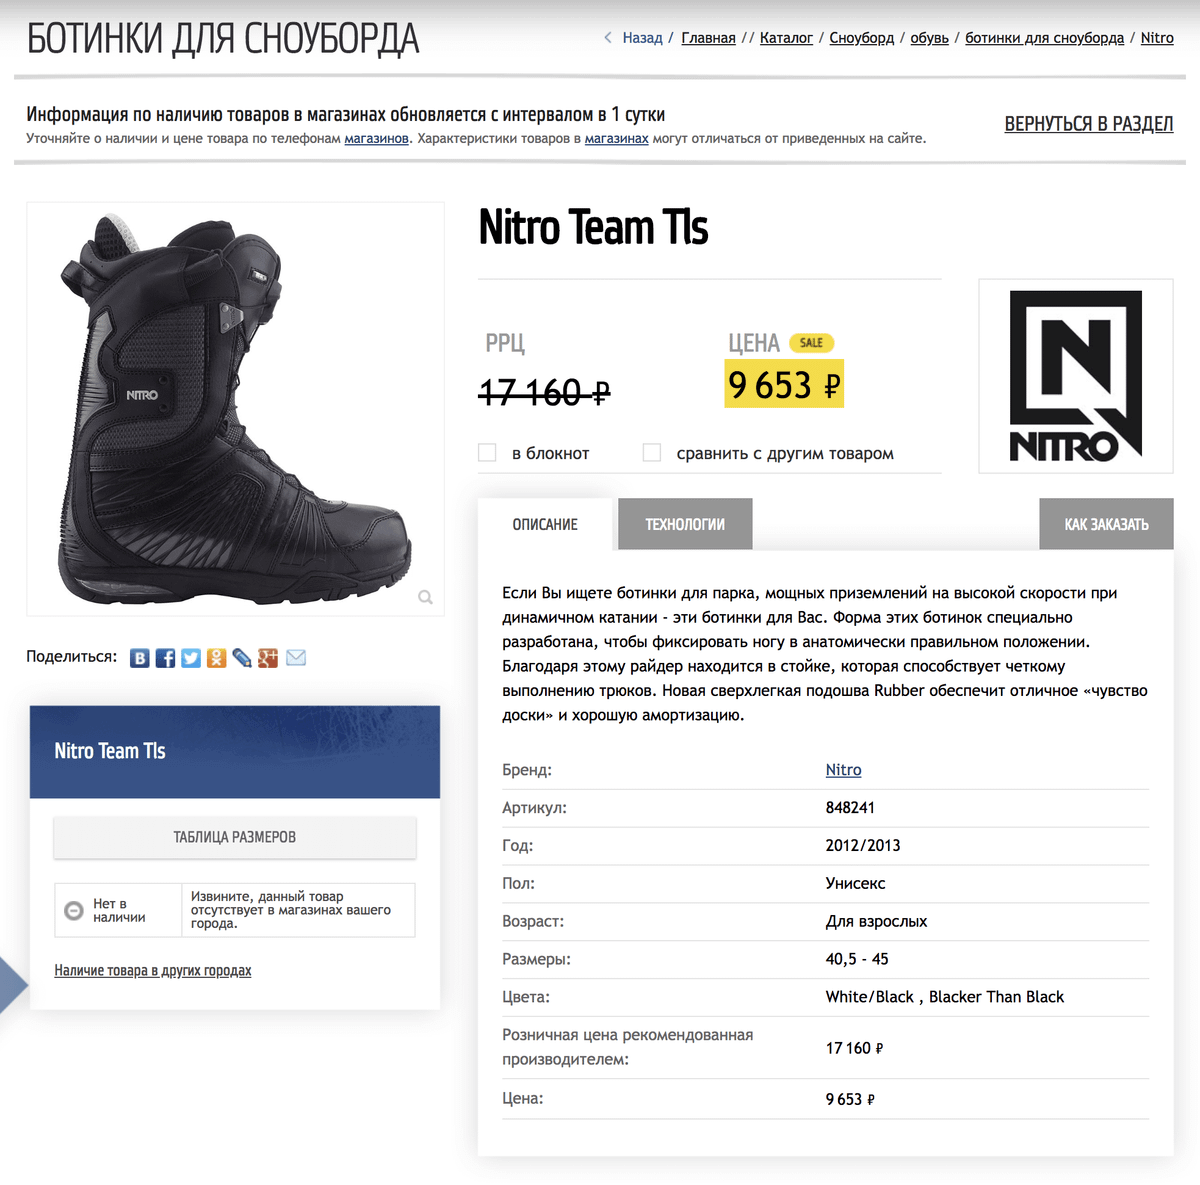 Новые ботинки той же фирмы в интернет-магазине за 9653 <span class=ruble>Р</span>. Источник: Триал-спорт